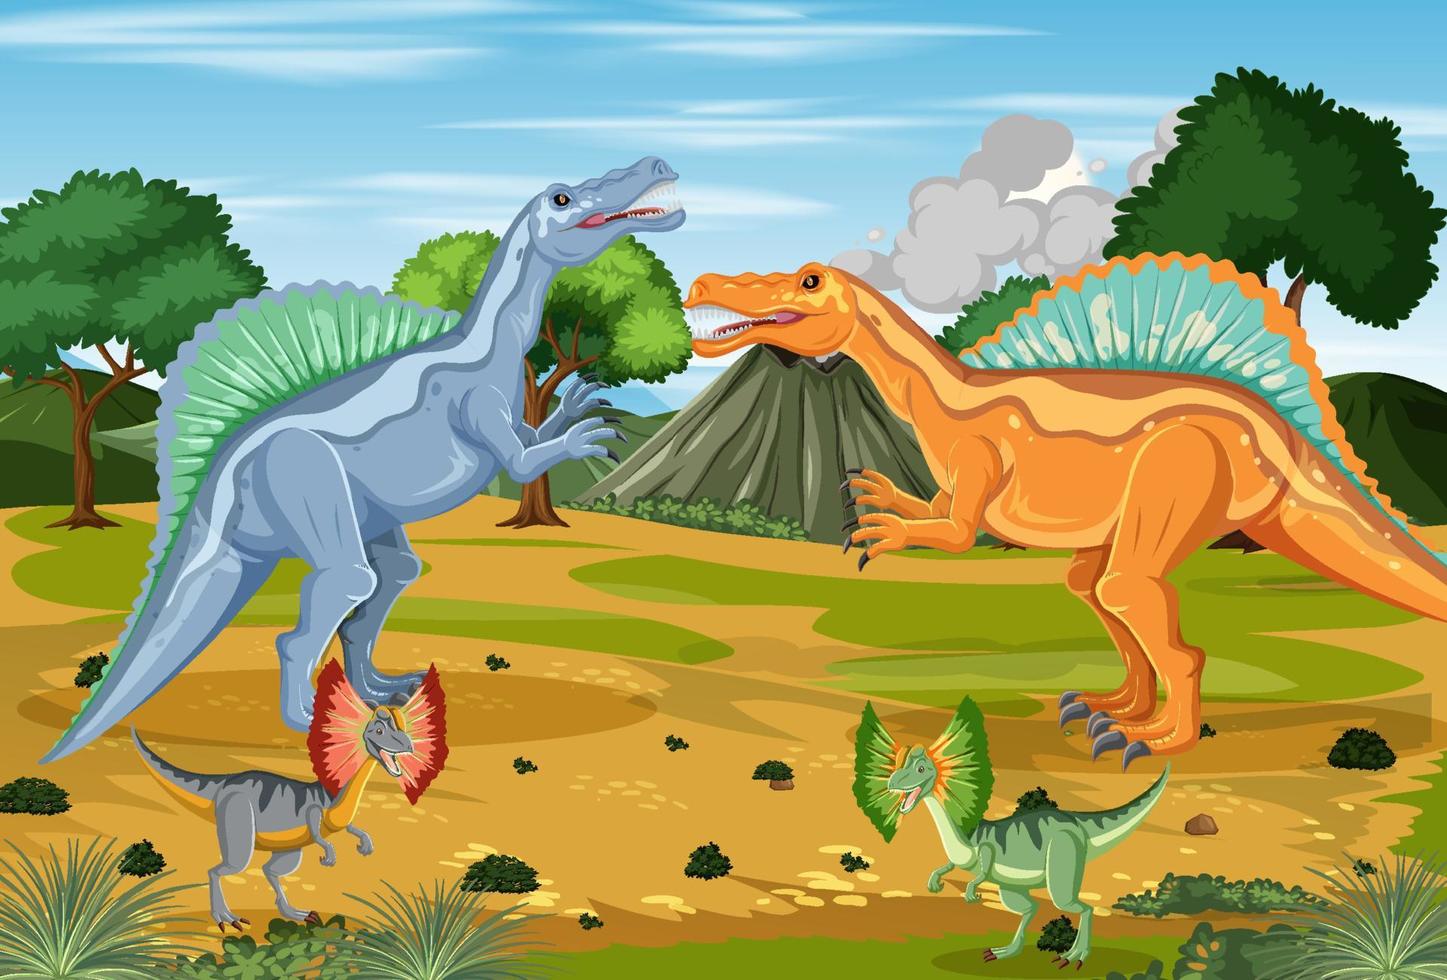 dinosaurus in prehistorische bosscène vector